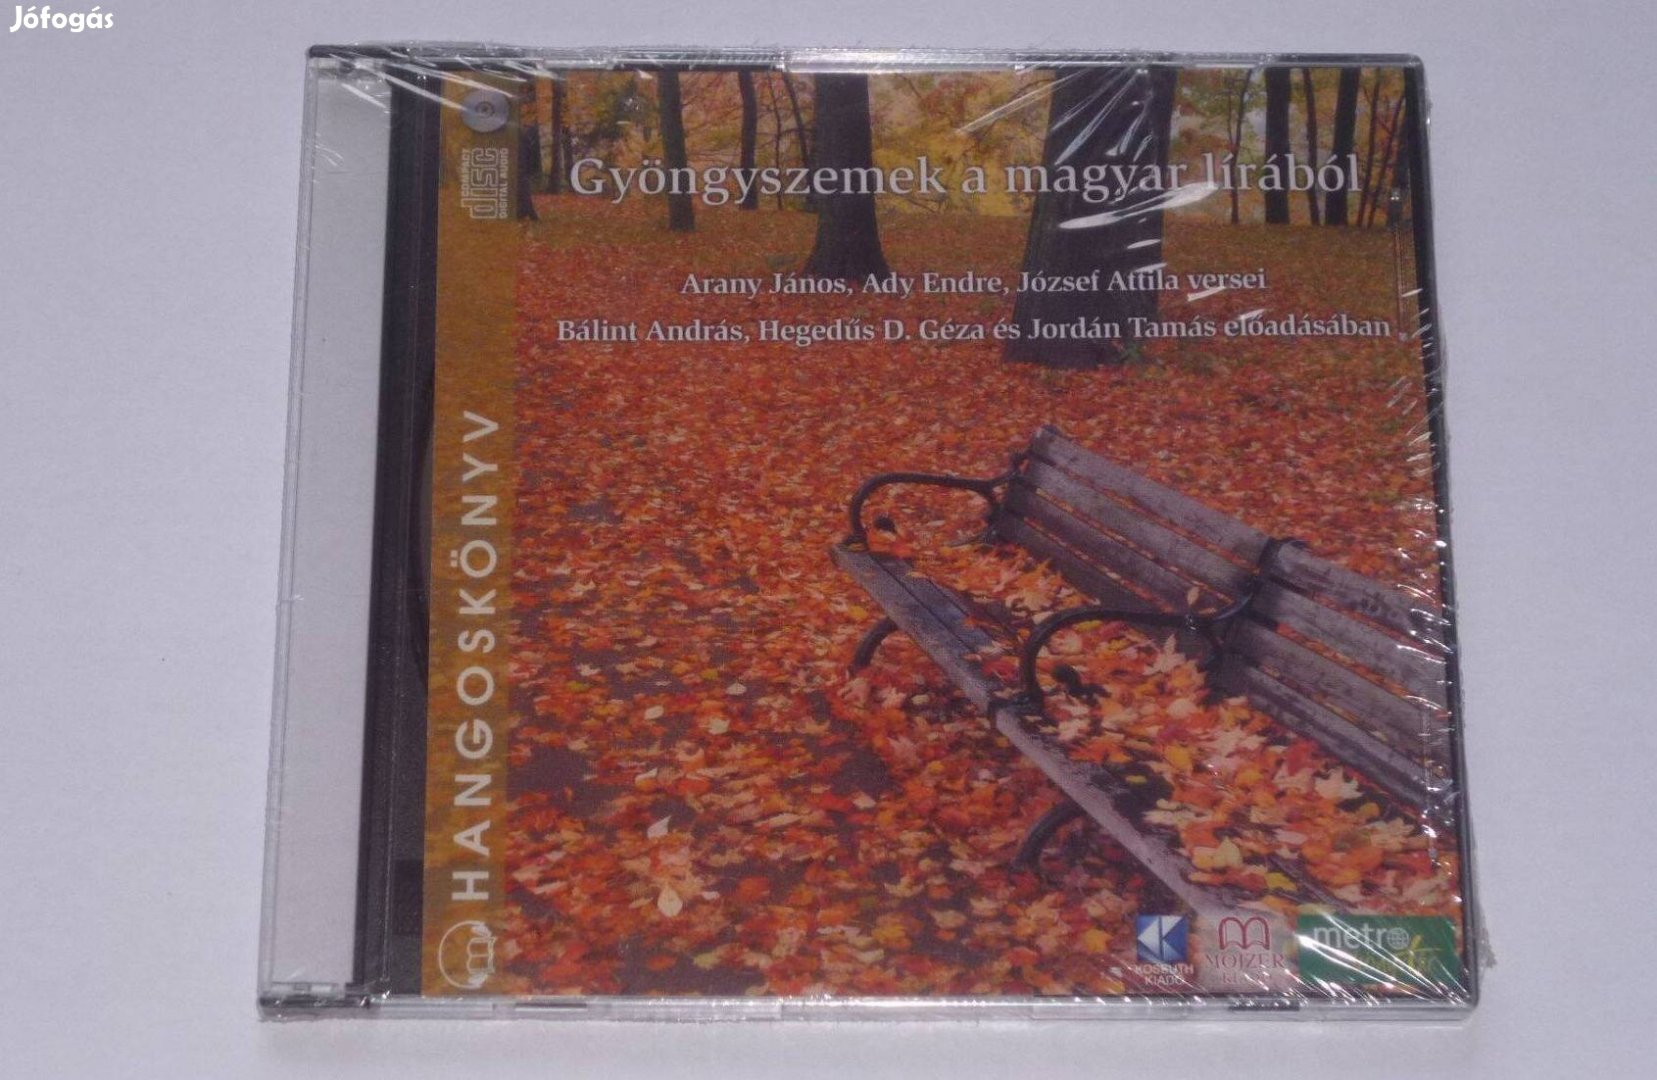 Gyöngyszemek a magyar lírából hangoskönyv MP3CD